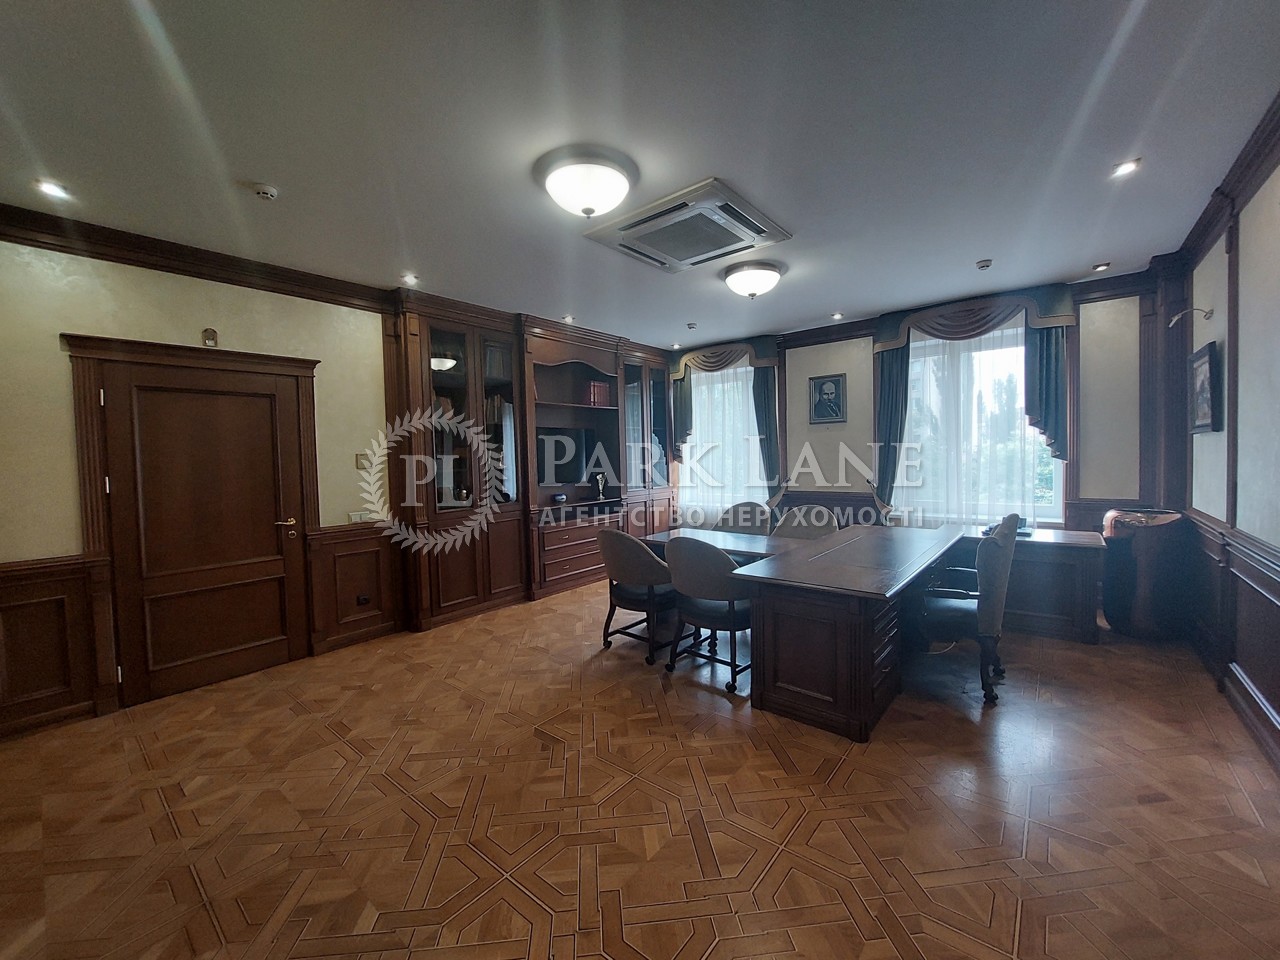  Офис, J-35852, Бульварно-Кудрявская (Воровского), Киев - Фото 24